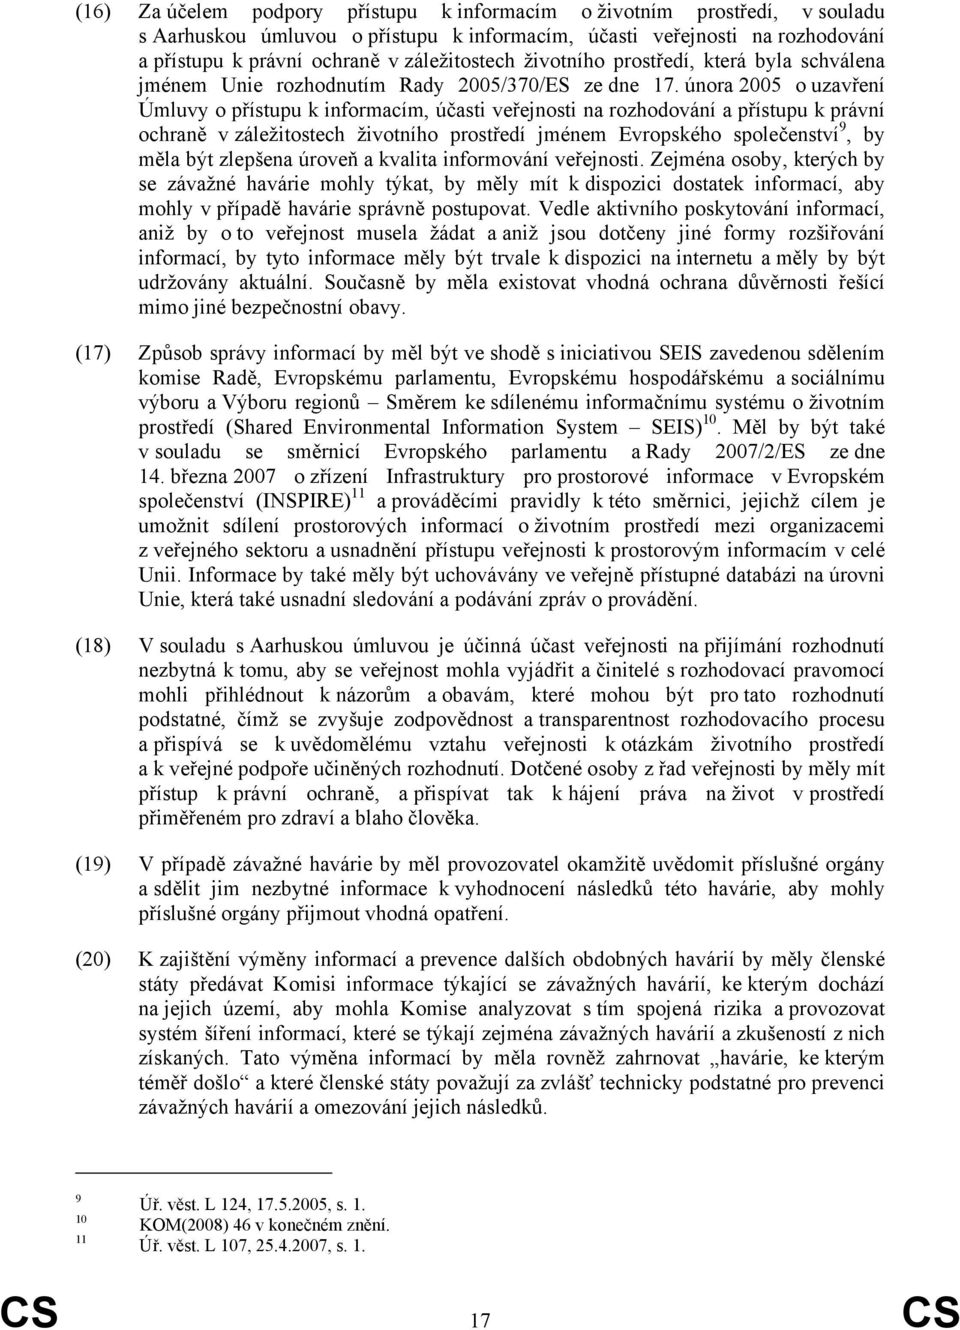 února 2005 o uzavření Úmluvy o přístupu k informacím, účasti veřejnosti na rozhodování a přístupu k právní ochraně v záležitostech životního prostředí jménem Evropského společenství 9, by měla být